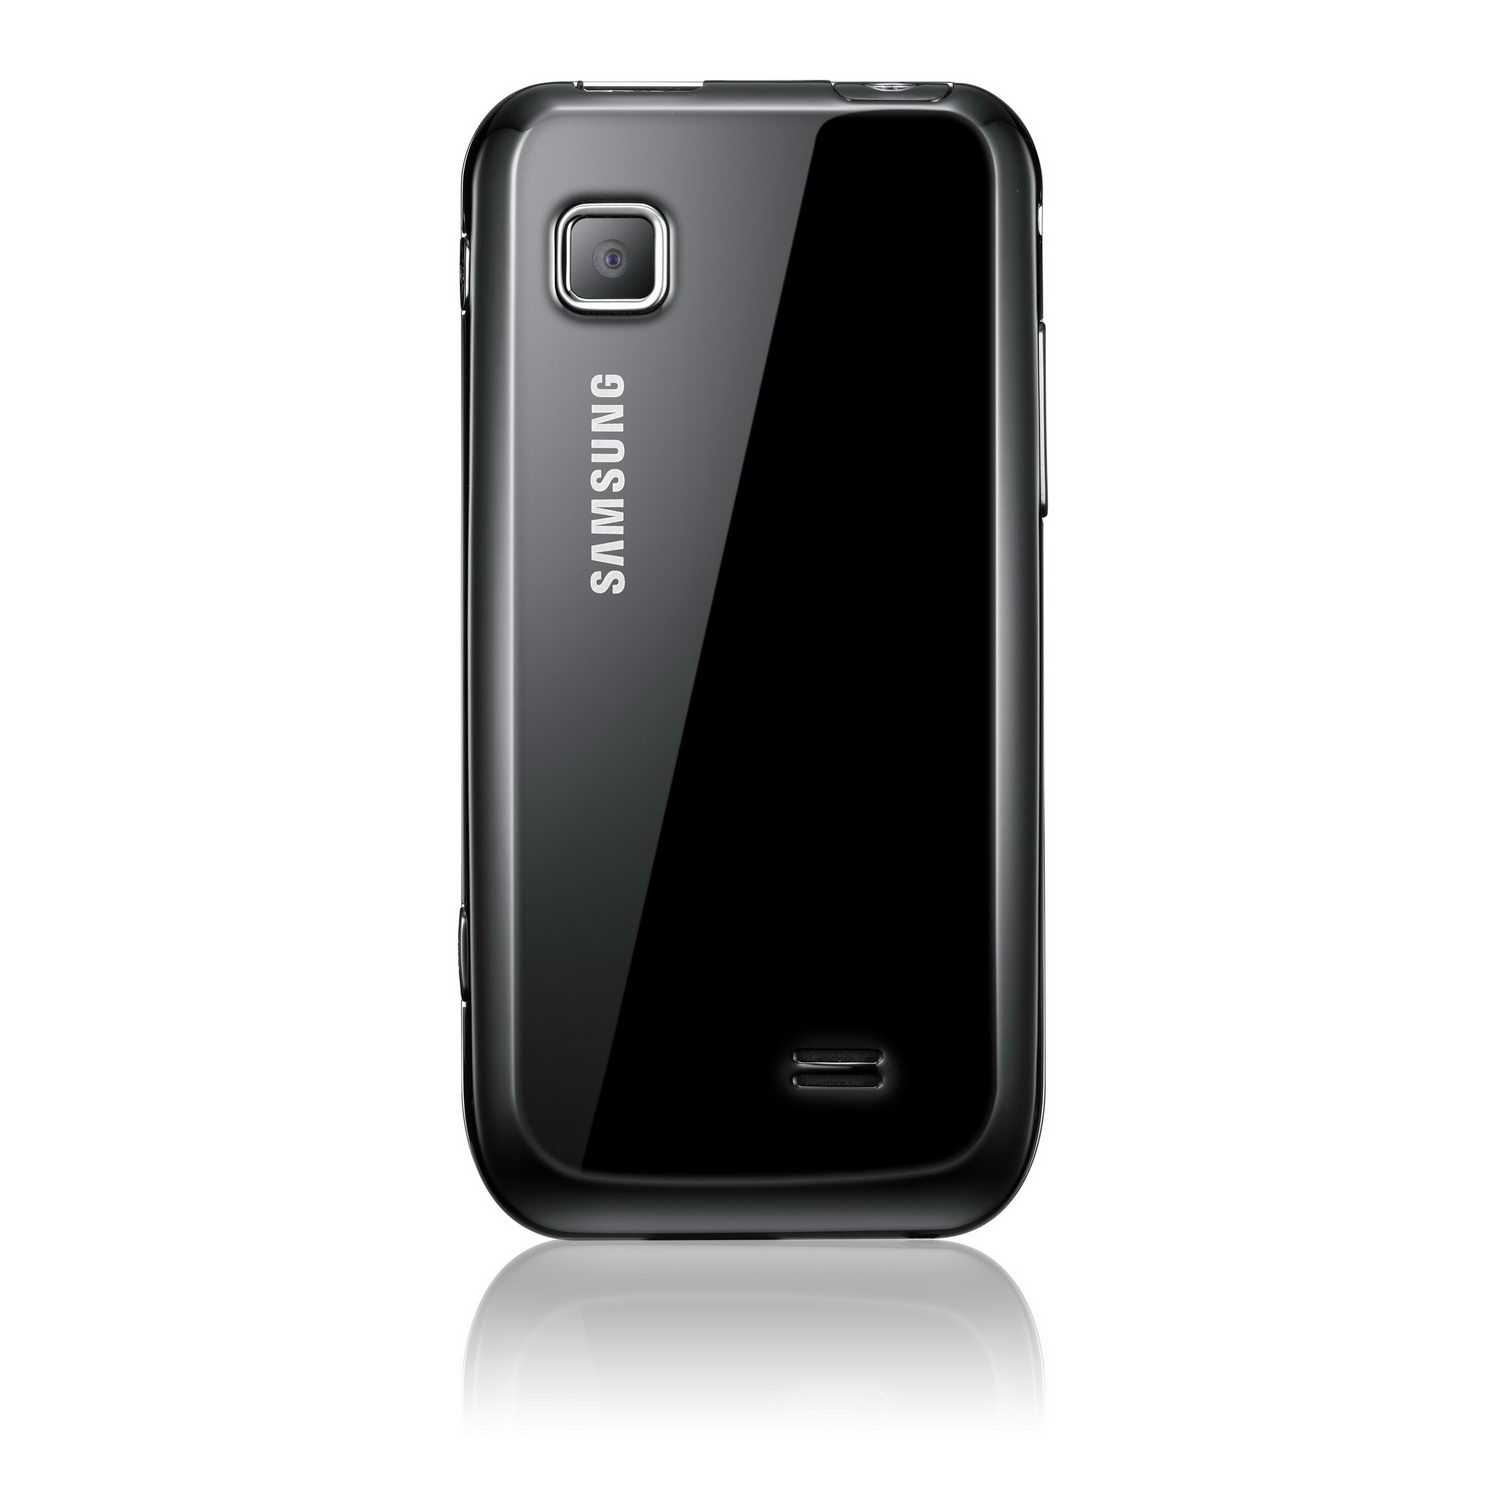 Мобильный телефон Samsung Wave 533 - подробные характеристики обзоры видео фото Цены в интернет-магазинах где можно купить мобильный телефон Samsung Wave 533